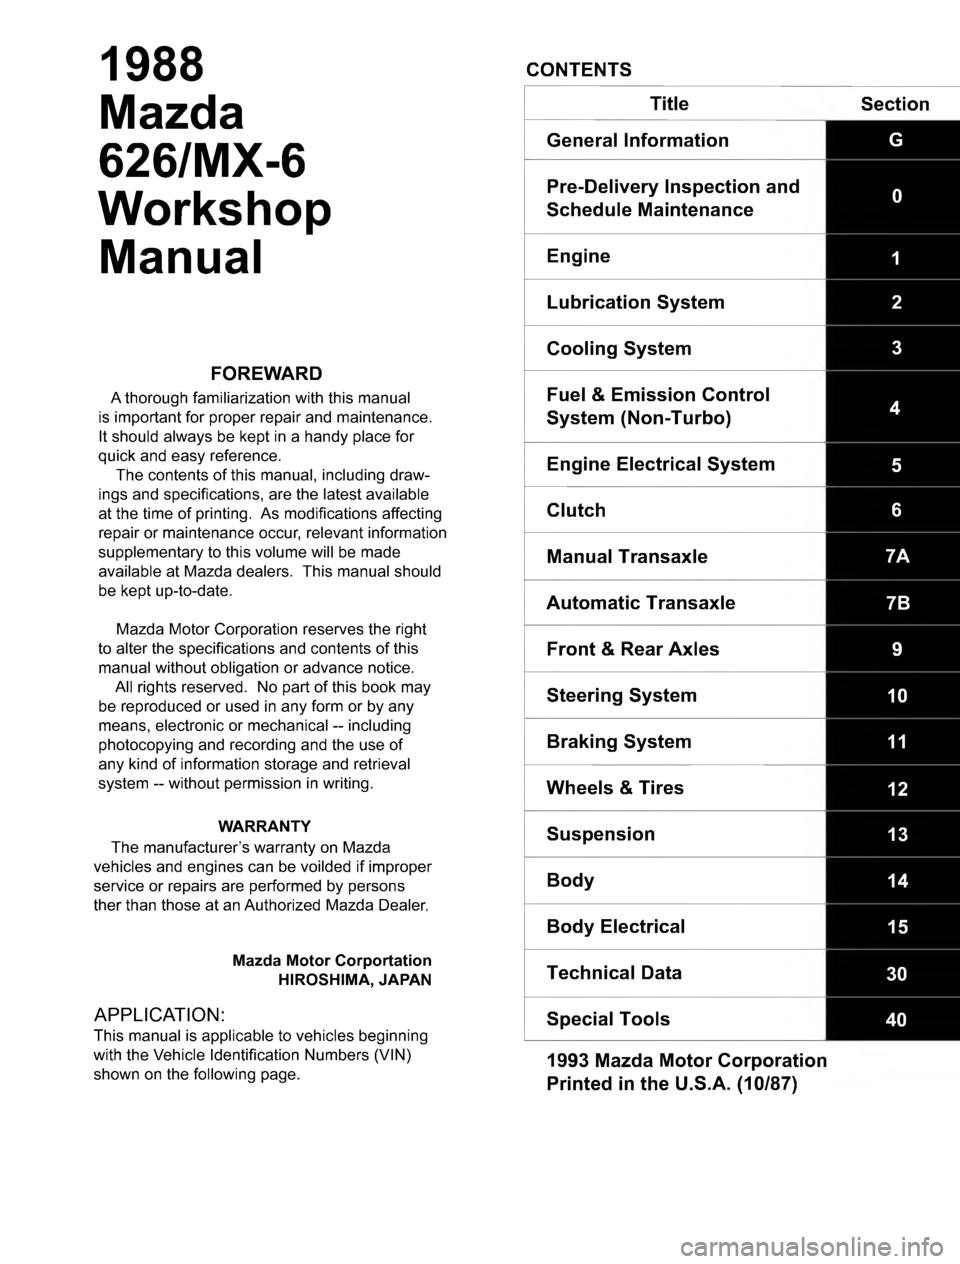 MAZDA MX-6 1988  Workshop Manual 	






	

"
#



	

!




!



	

#
&
	




#

	


$$
 
-

/
0
2

6

7

9
	
9

;

/
:
/

/

/2
:
/6
:
/7

2-

6
/
  